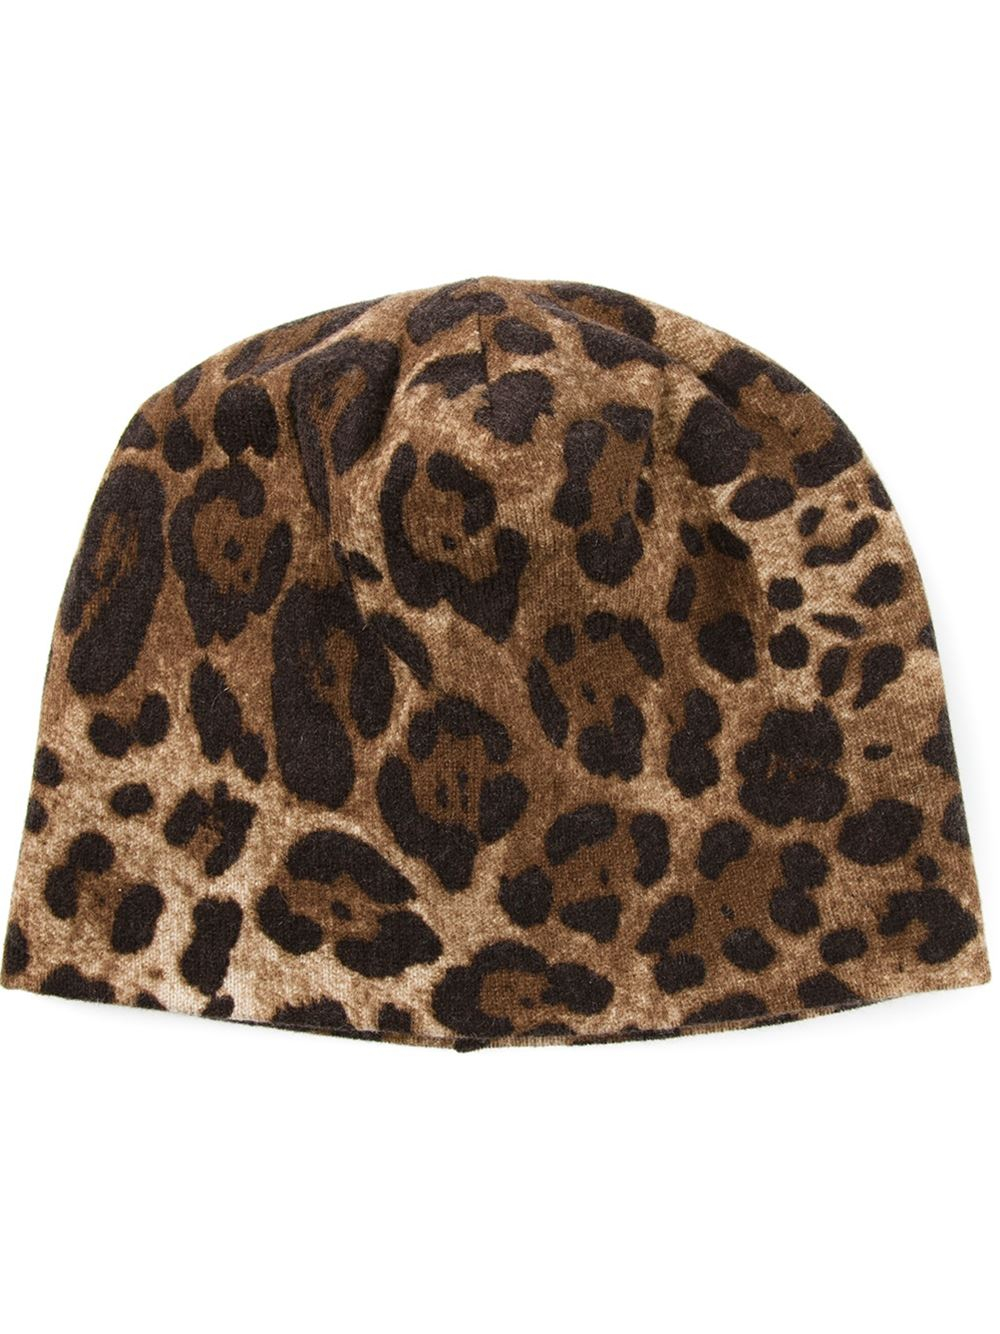 Lyst - Dolce & Gabbana Leopard Print Beanie Hat in Brown